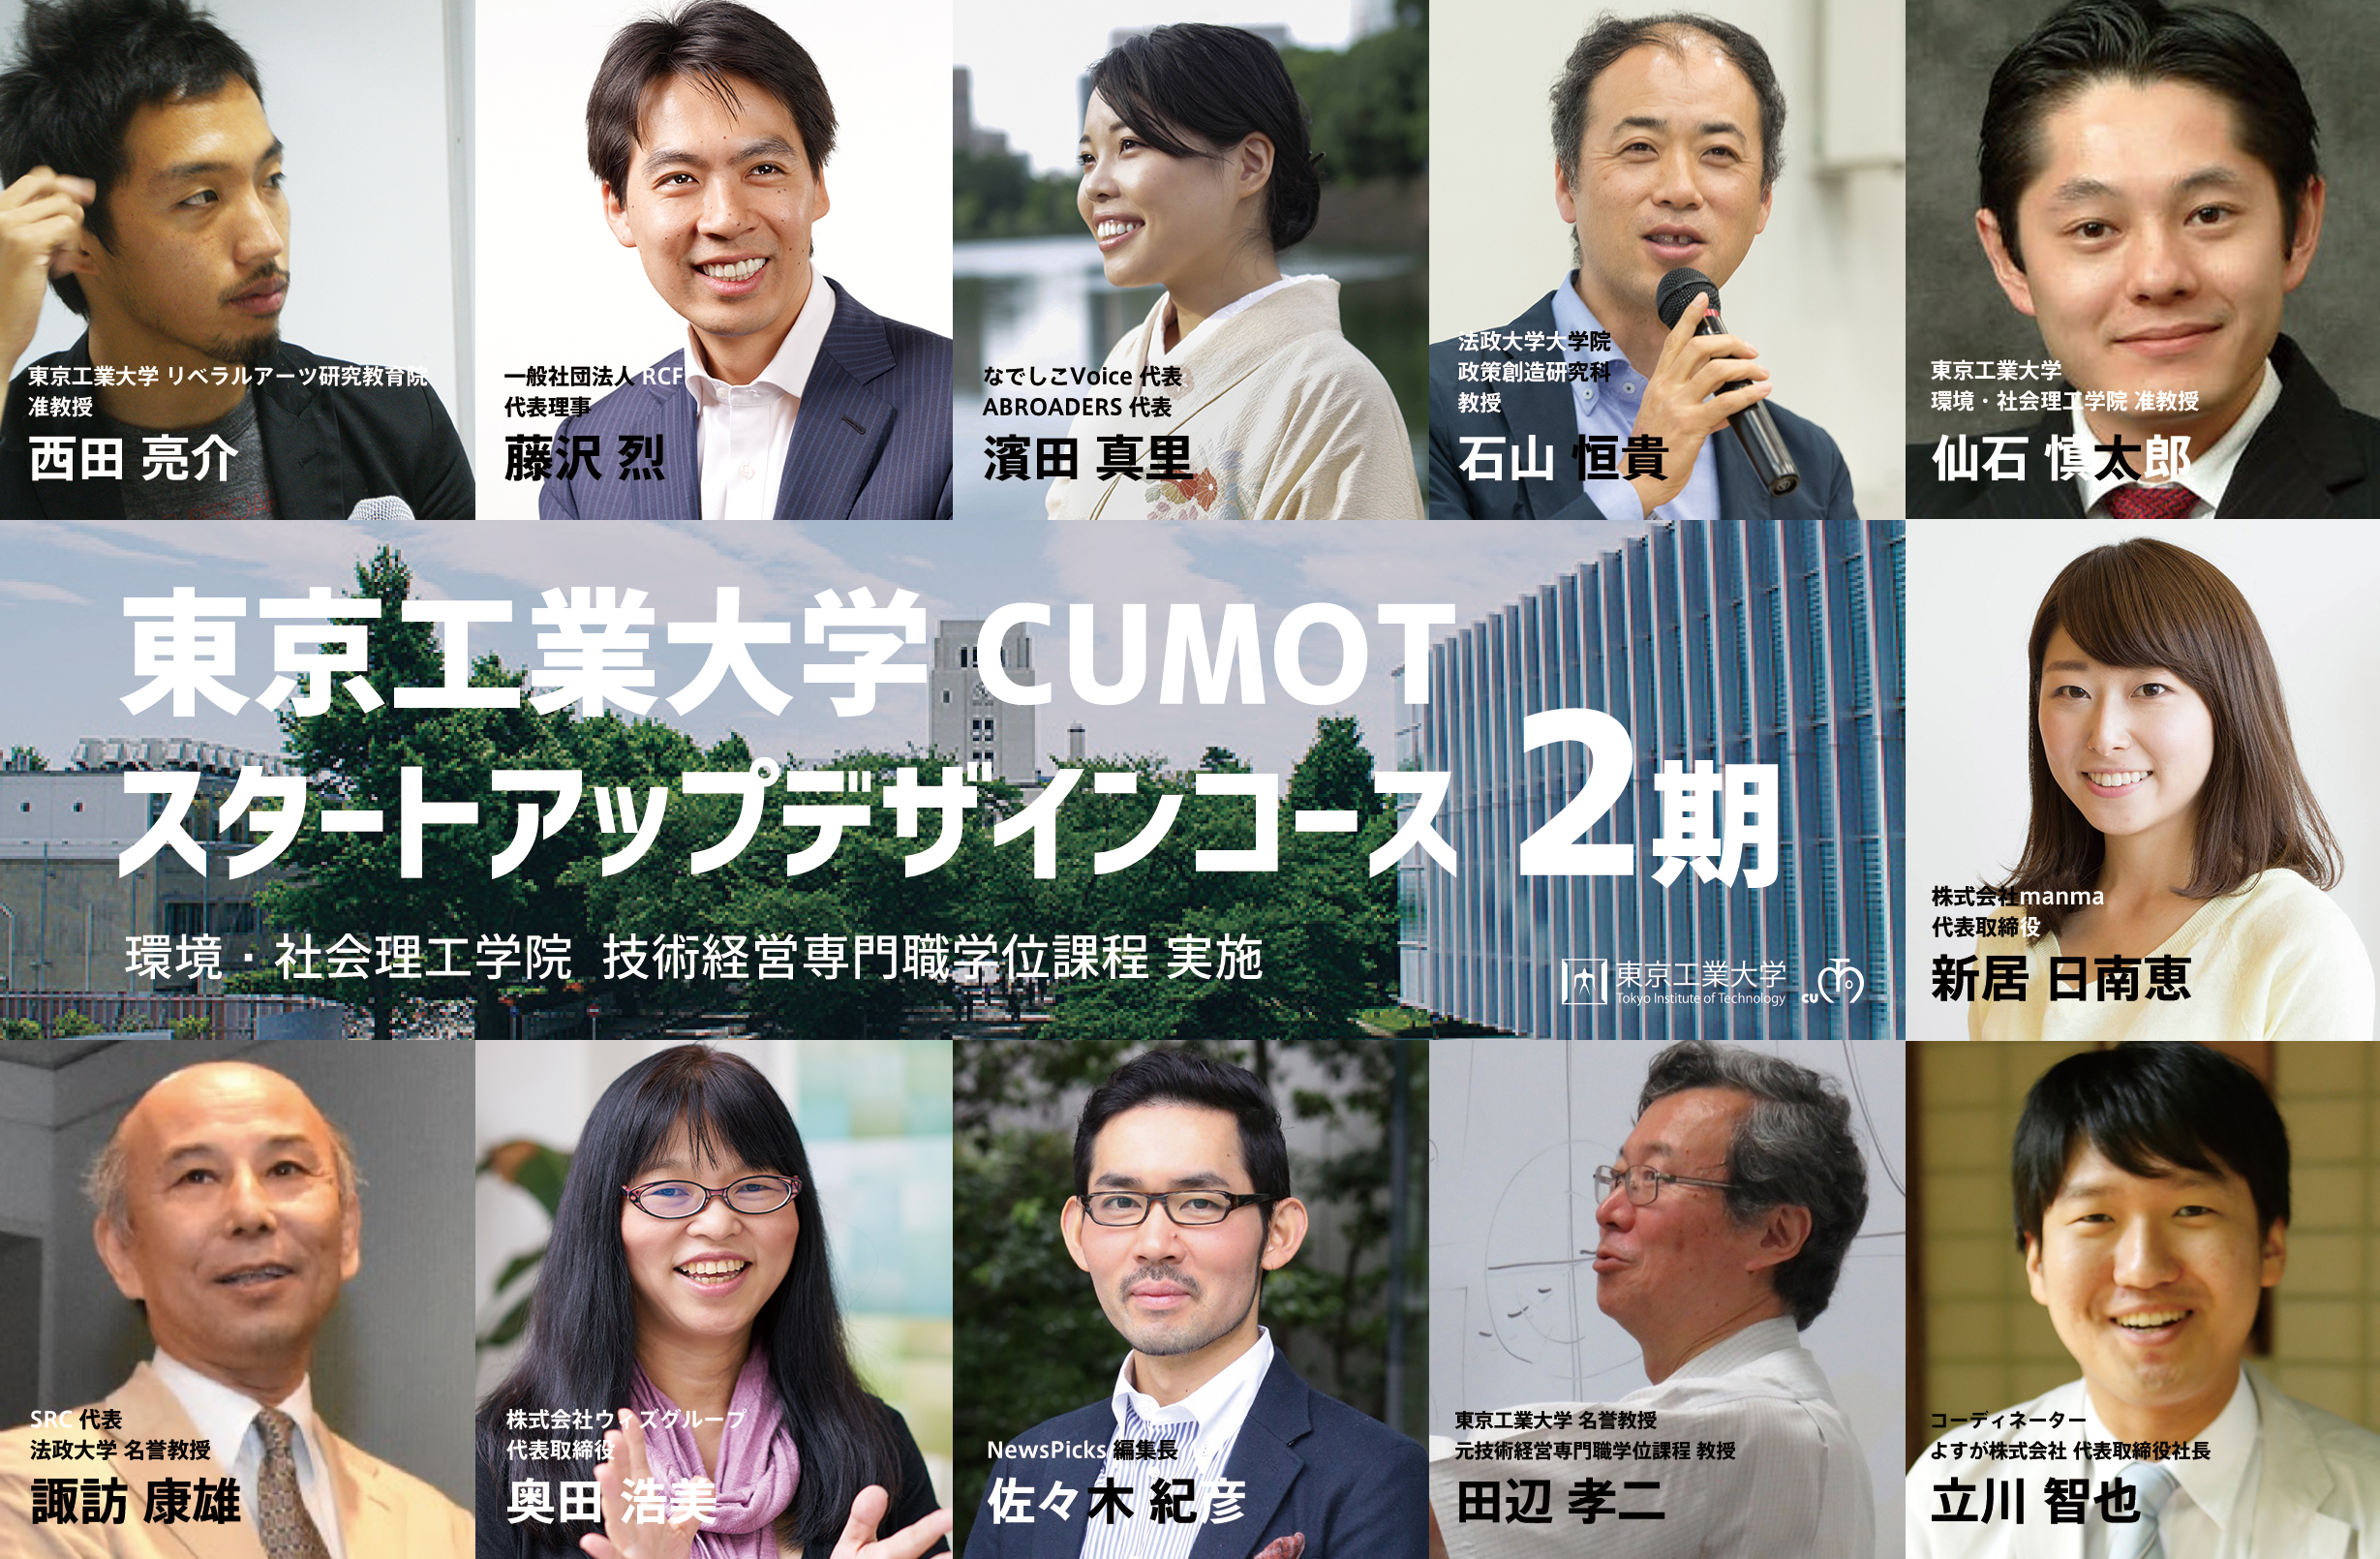 弊社代表の立川がコーディネーターを務めている、東京工業大学の若手社会人向けプログラム「スタートアップデザインコース第2期（全10回）」が本年11月より開講いたします。